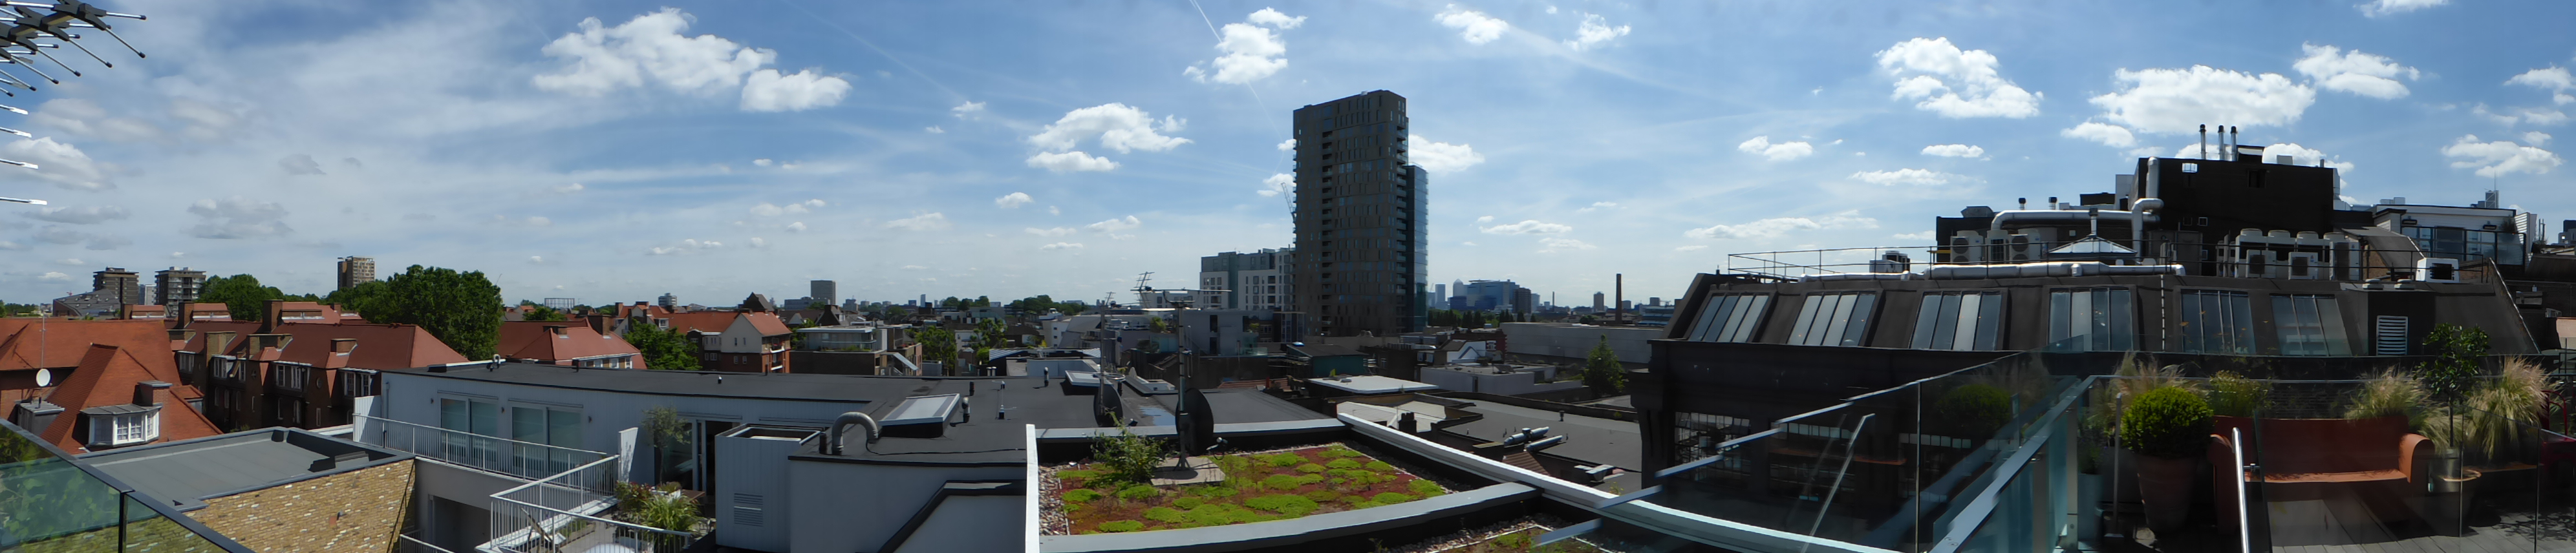 Viel Grün auf den Dächern von London